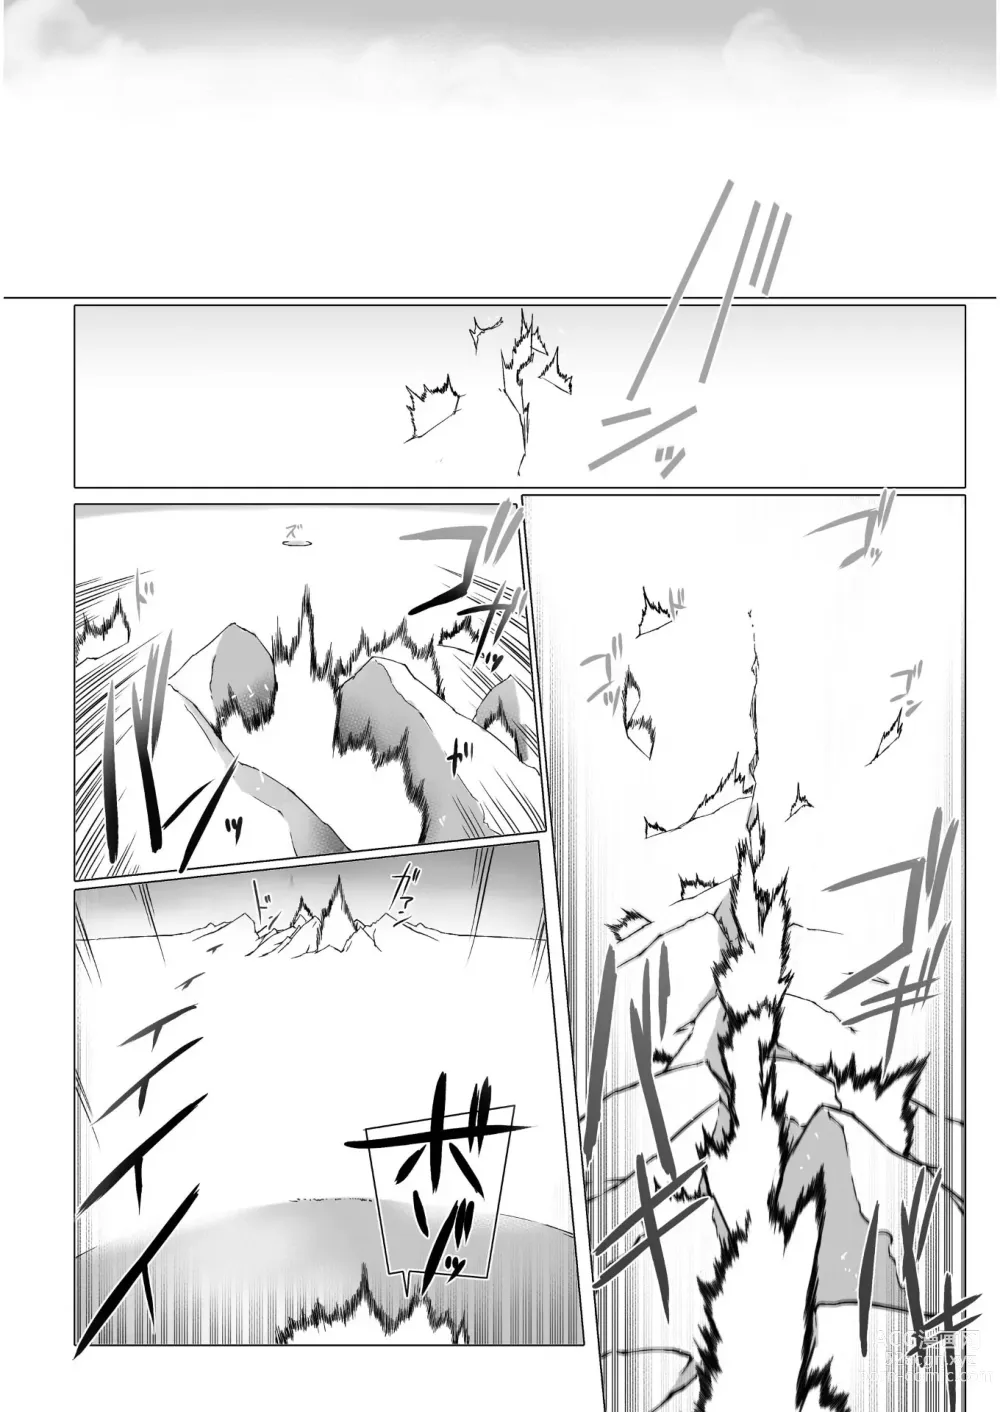 Page 274 of manga Ziggurat Ch. 41 - 50